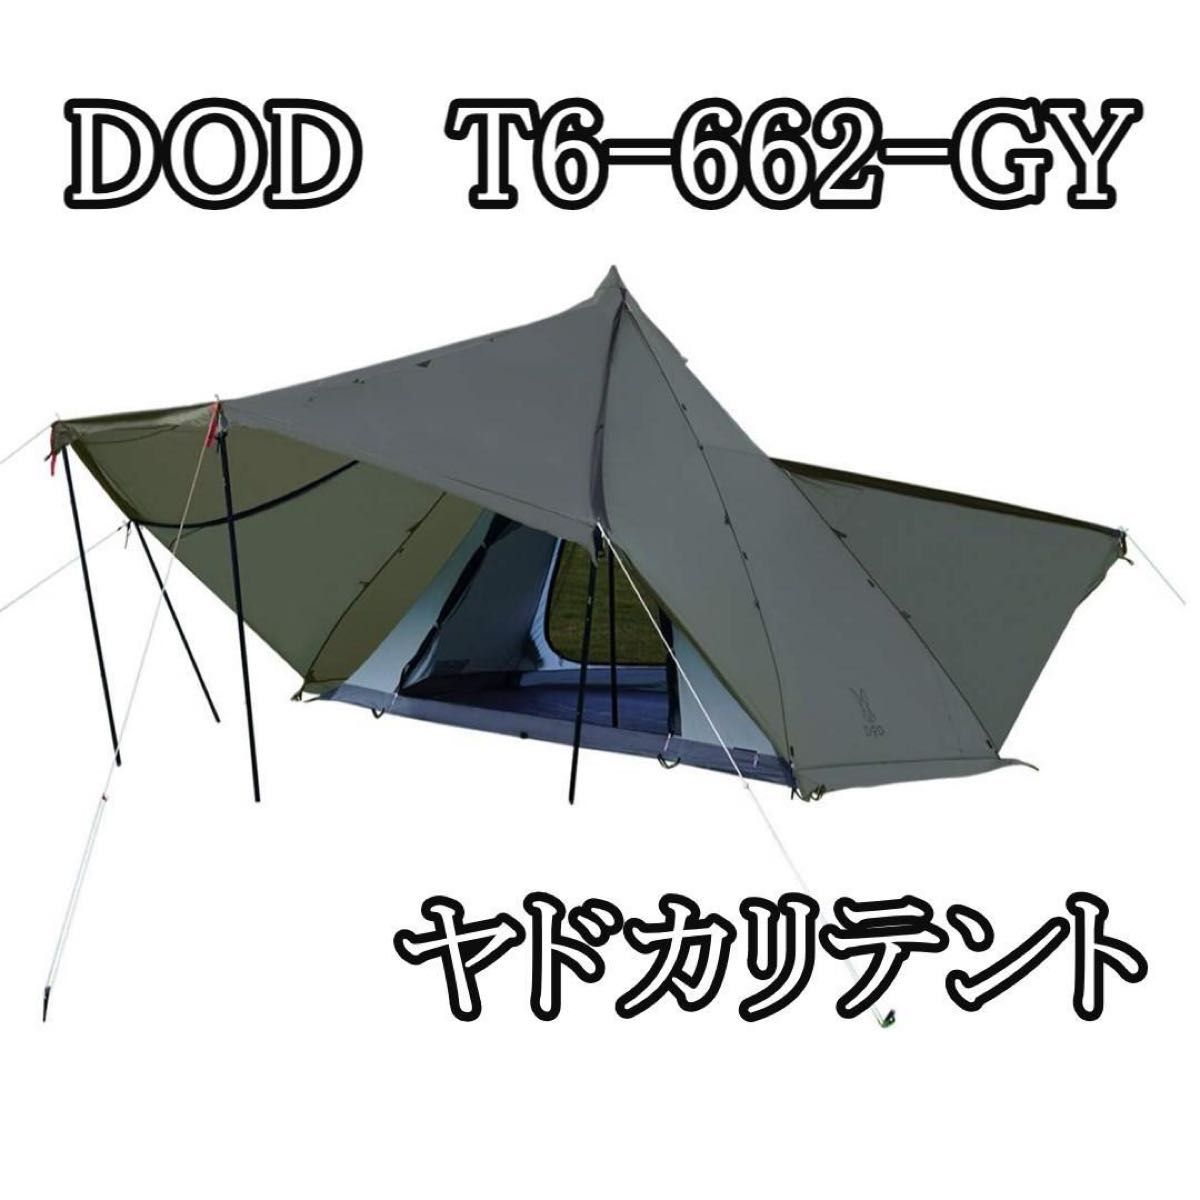 DOD ヤドカリテント - テント・タープ